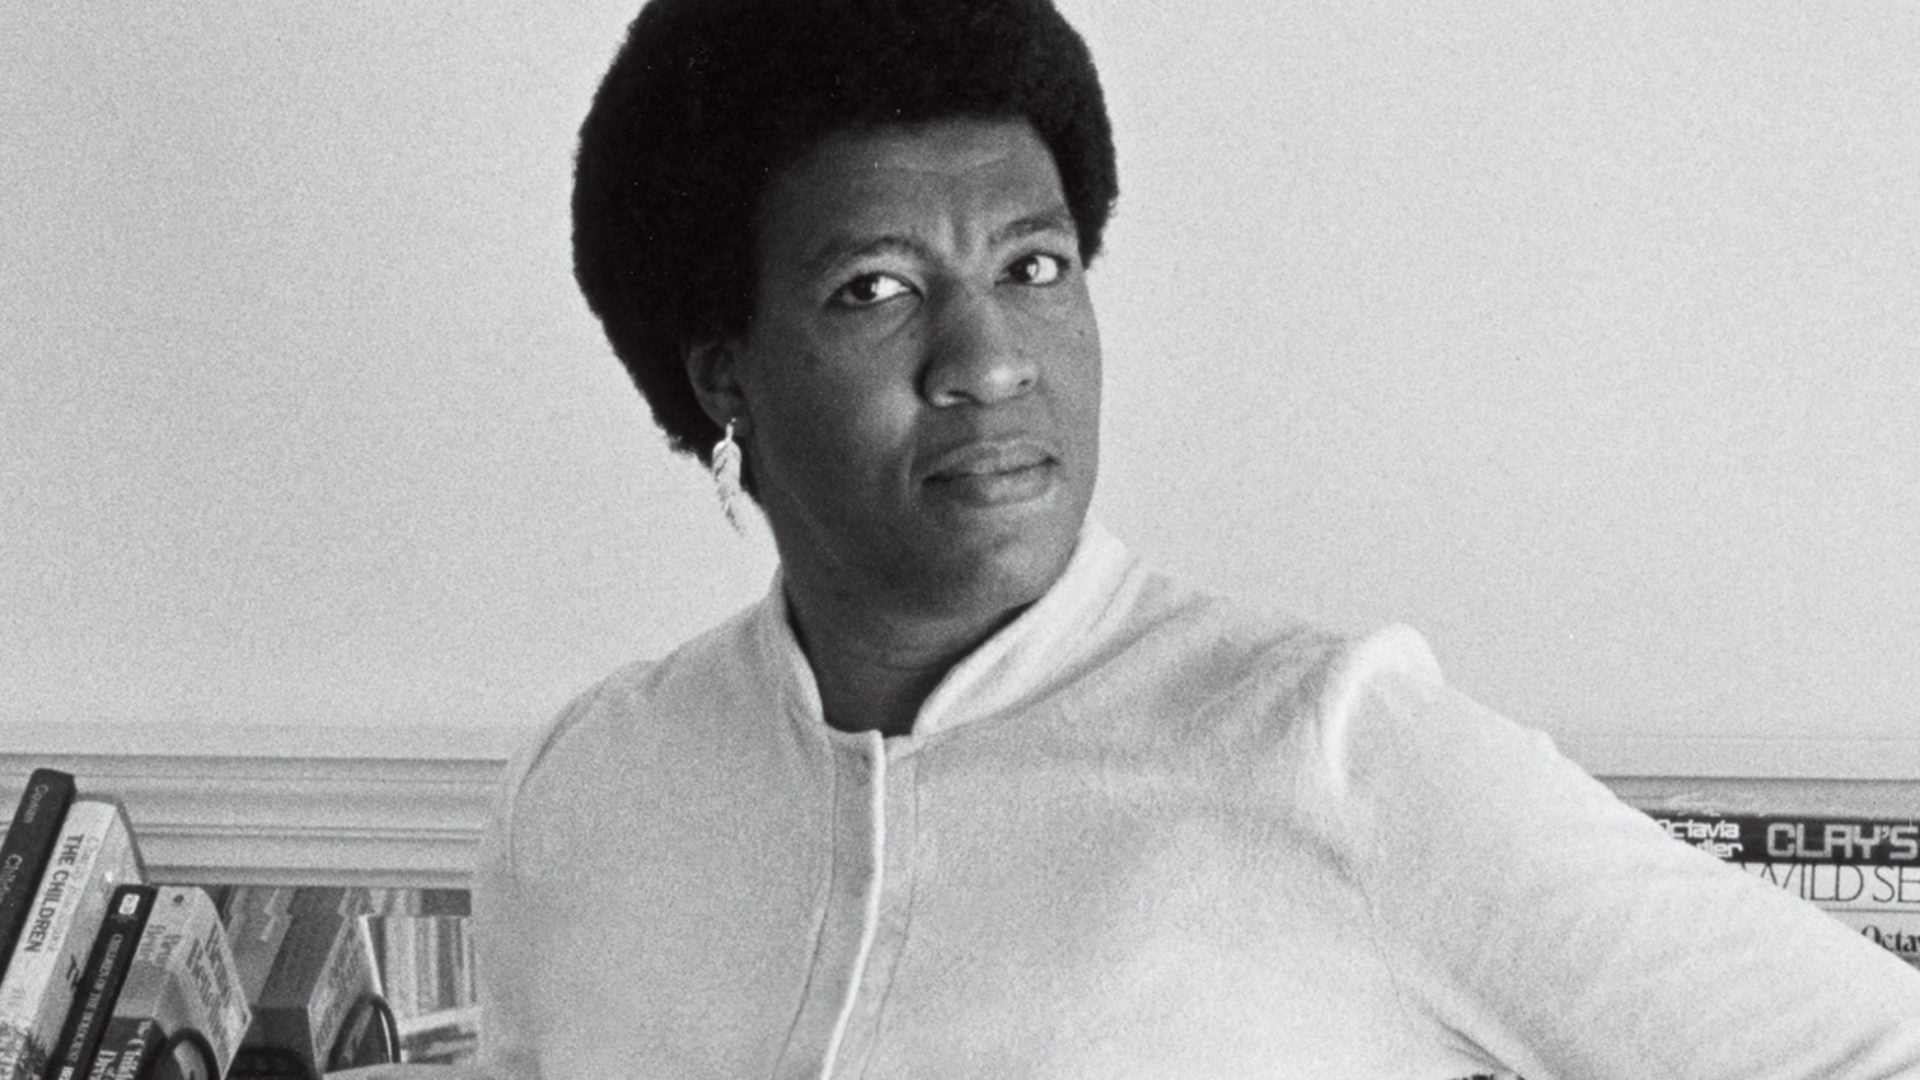 Conversations with Octavia Butler by Octavia E. Butler